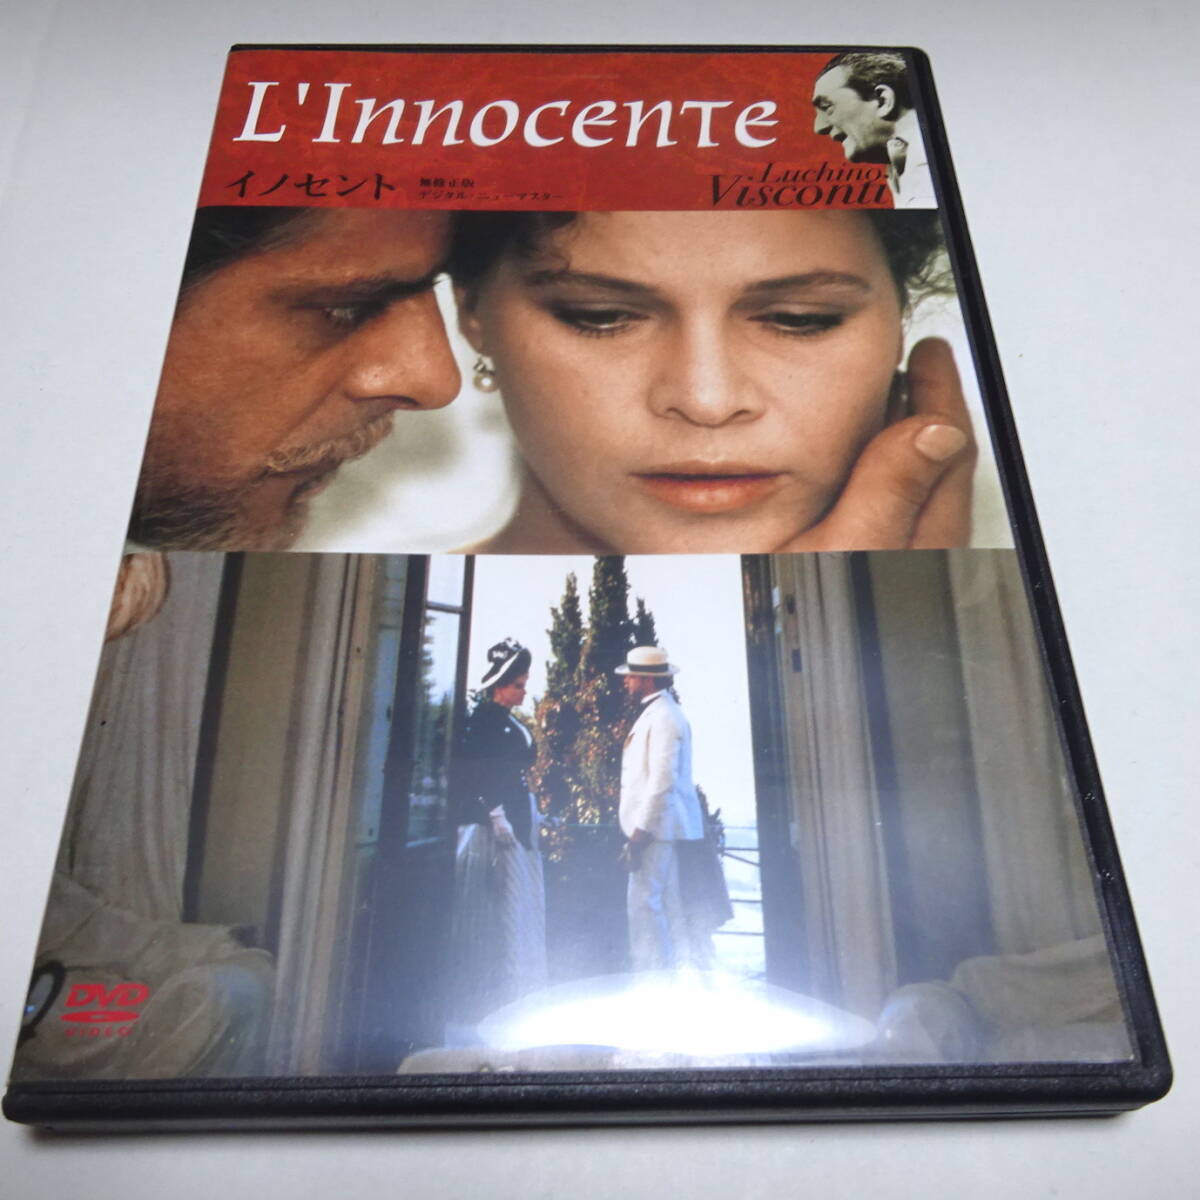 Cell DVD/Kinoya версия/комментарий "невинная версия без цензуры" Junkarlo Джаннинини/Лора Антонелли/Люсино Висконти (директор)